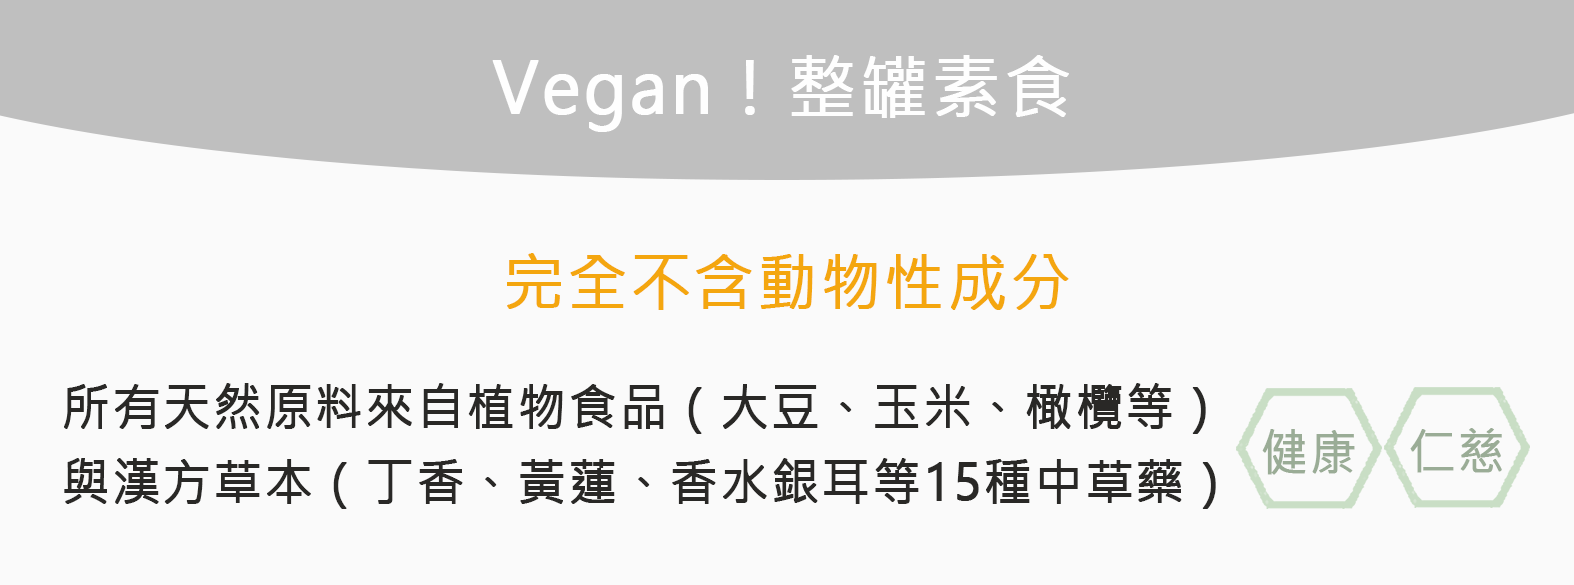 Vegan!整罐素食，完成不含動物性成份，所有天然原料來自植物食品(大豆、玉米、橄欖等) 與漢方草本(丁香、黃蓮、香水銀耳等15種中草藥)